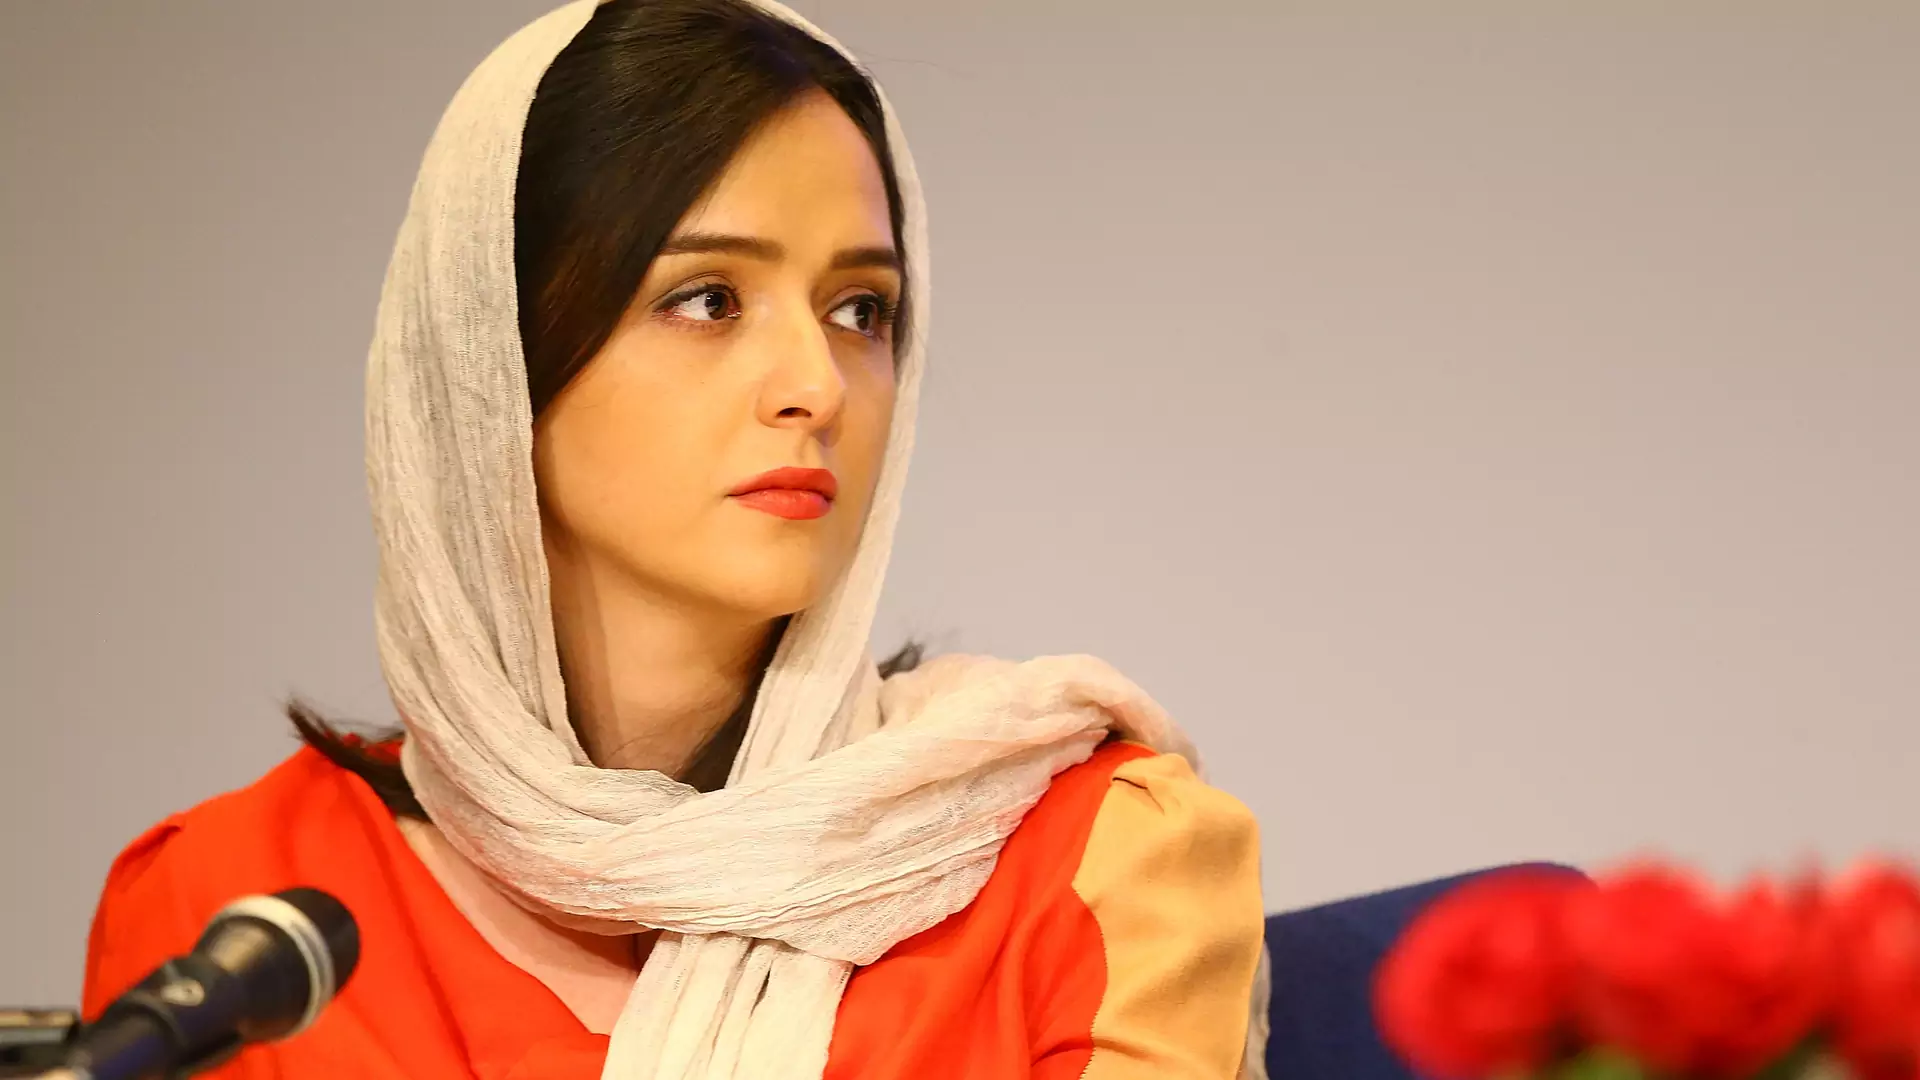 Aresztowano wpływową irańską aktorkę, która wspierała protesty. "Odziedziczyłam odwagę po kobietach z mojej ziemi"